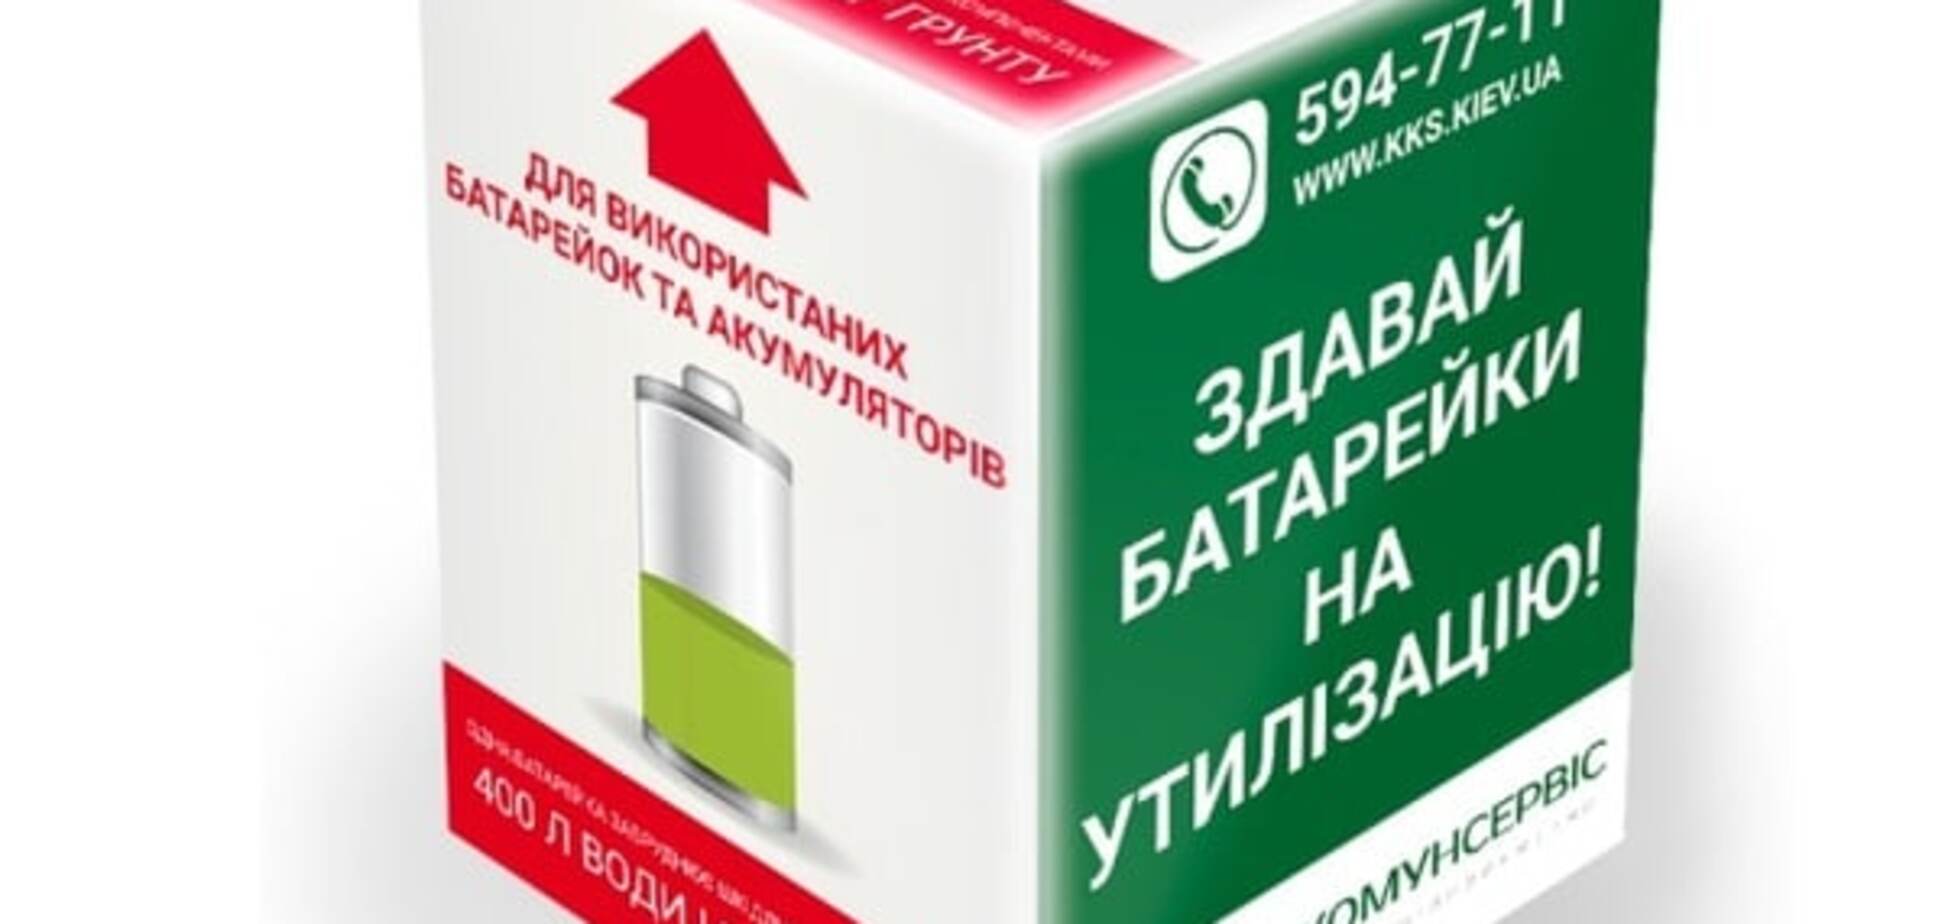 Ноу-хау: в Киеве появятся контейнеры для опасных отходов